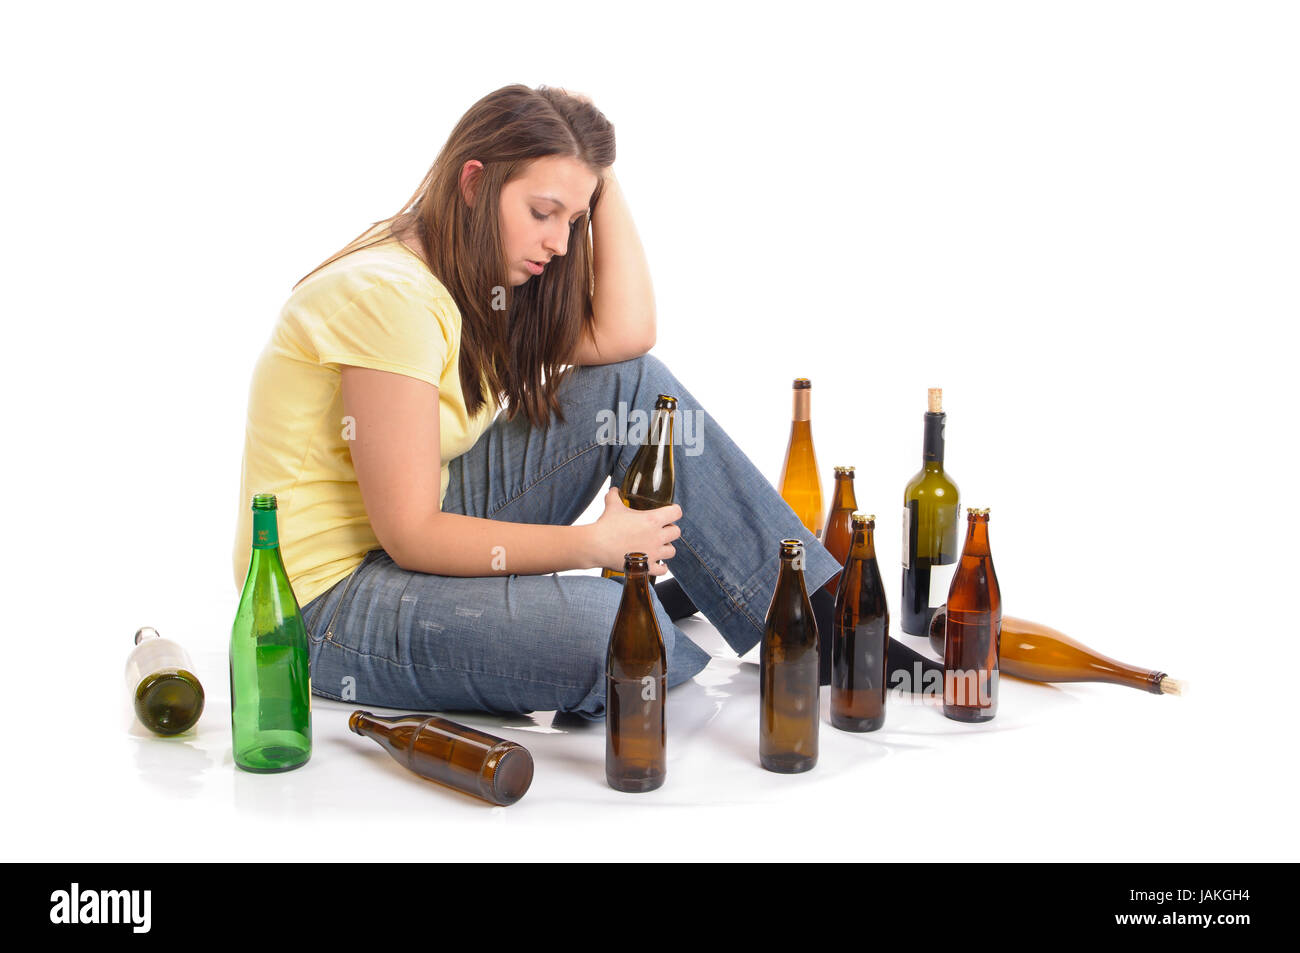 Junge Frau mit Jeans und T-Shirt sitzt auf dem Boden mit vielen leeren Bierflaschen und ist betrunken, isoliert vor weißem Hintergrund Stock Photo